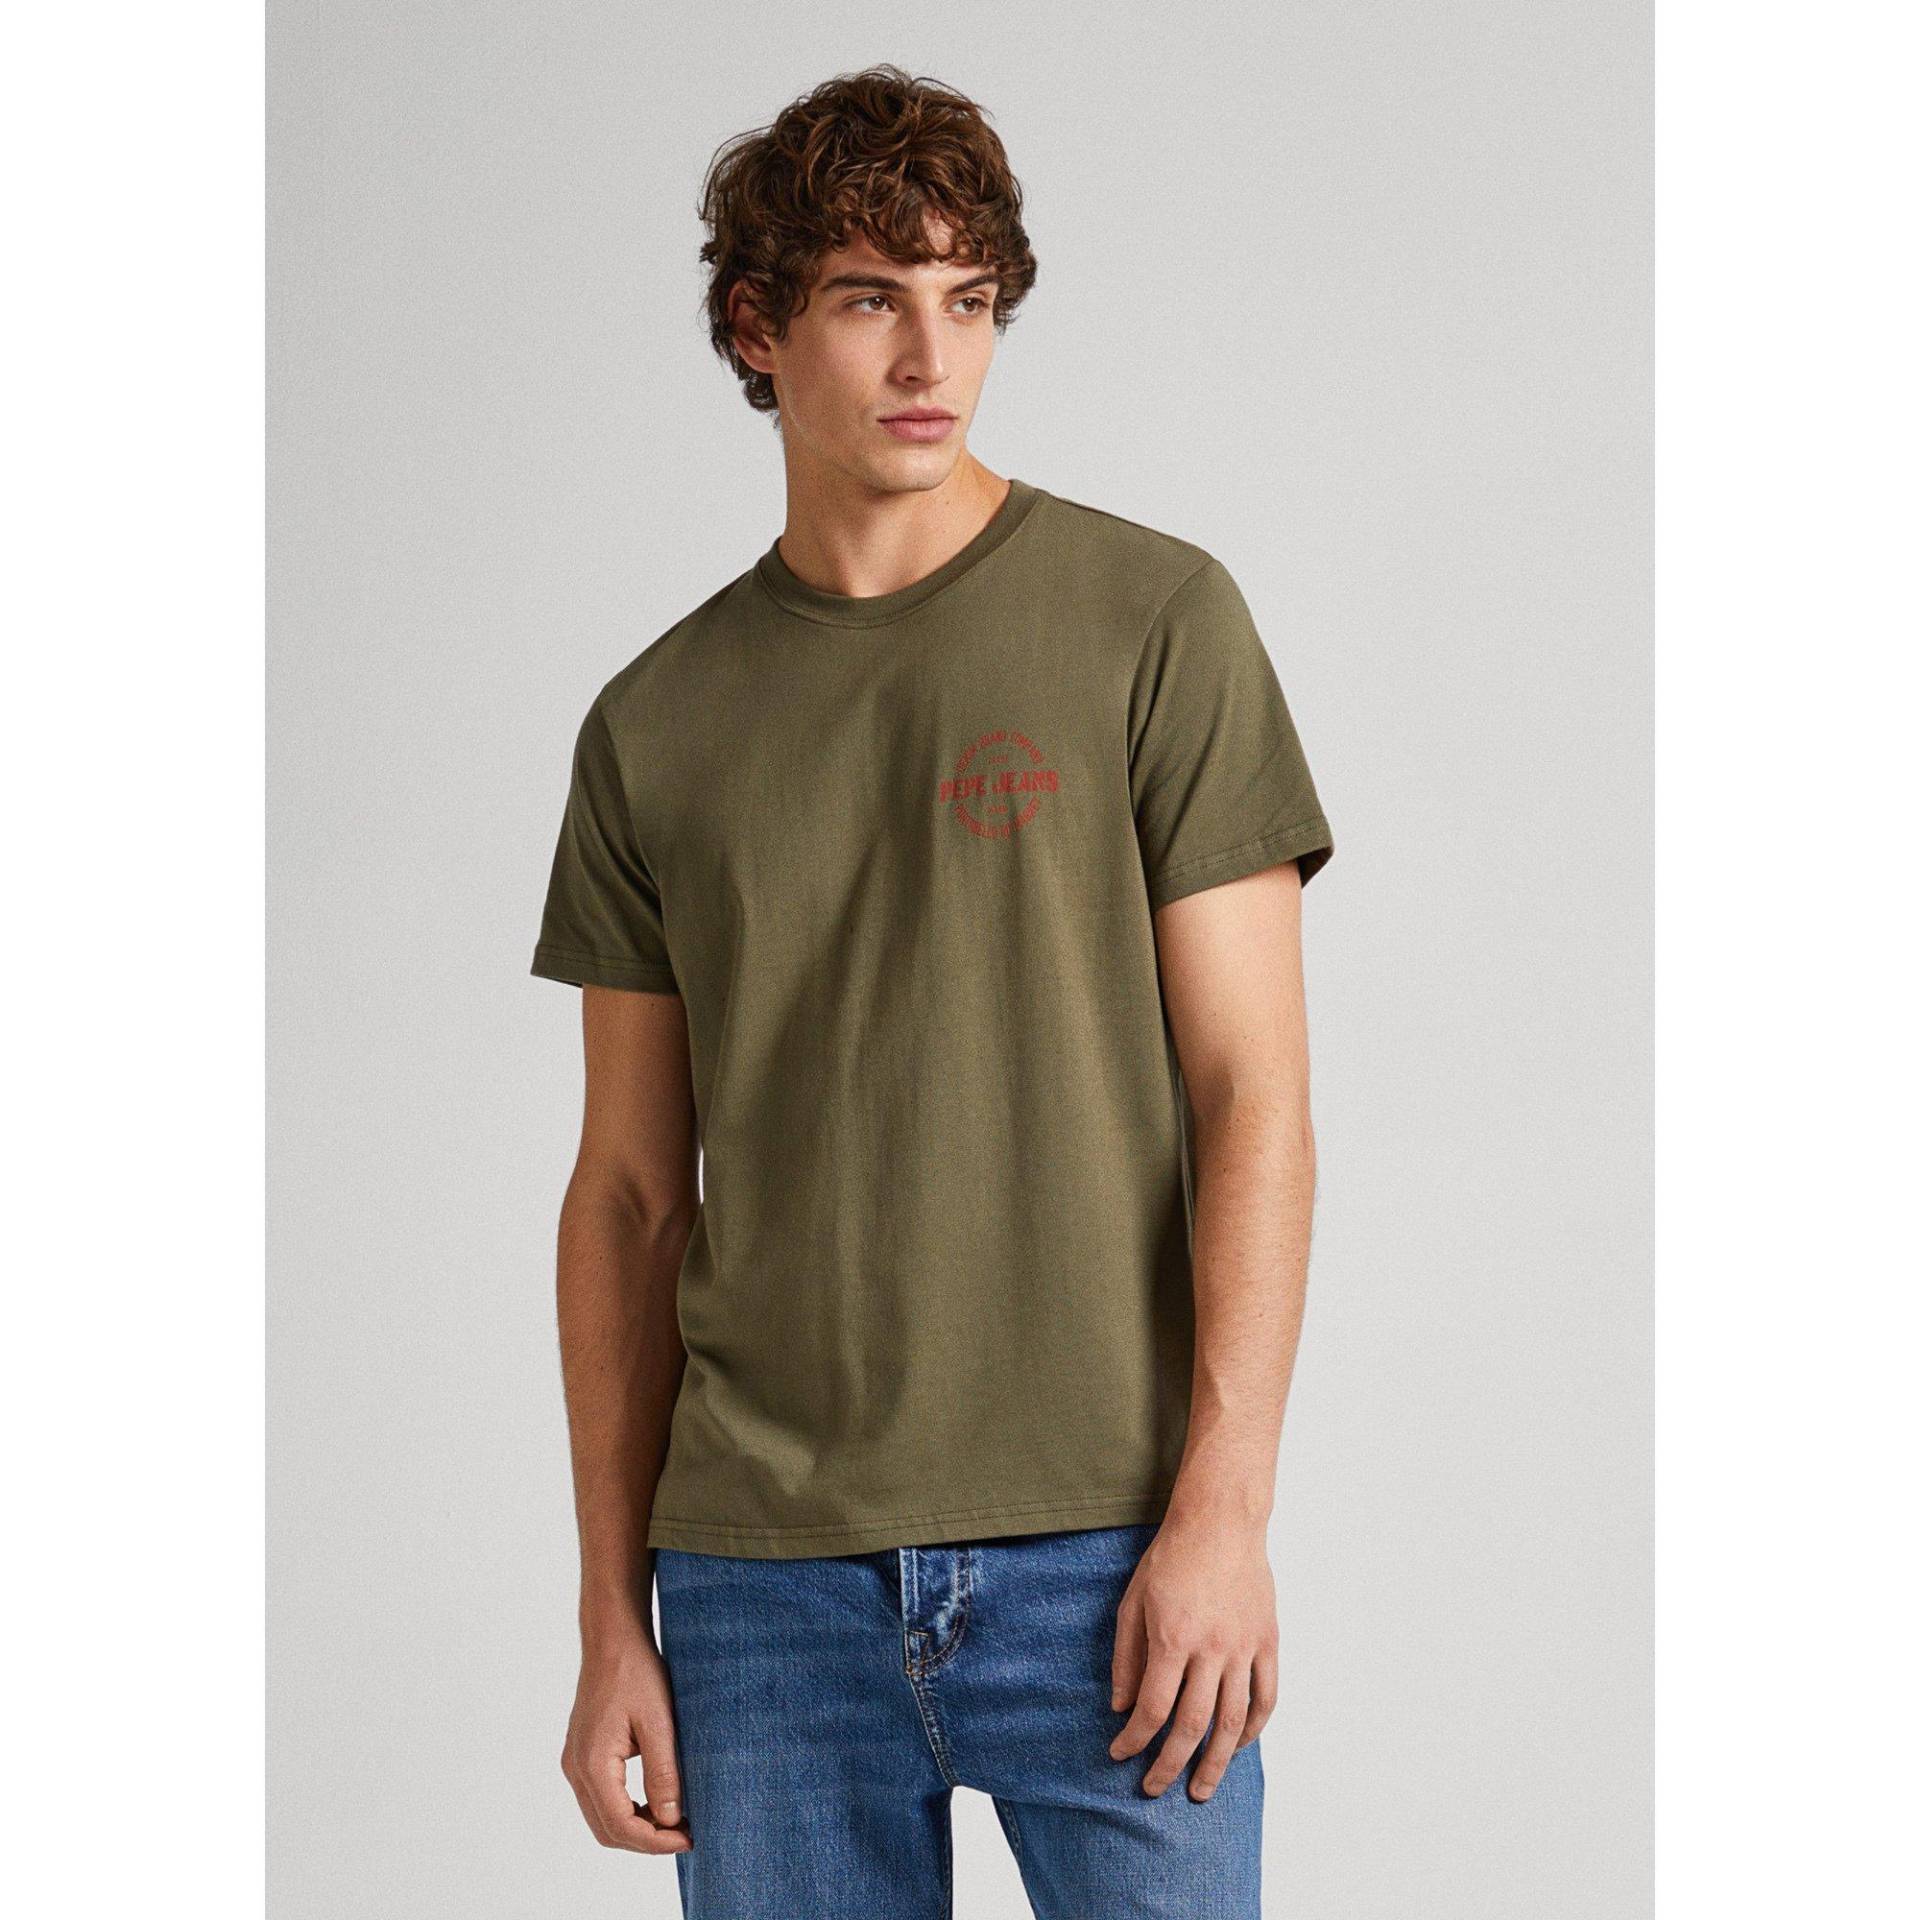 T-shirt Herren Militärgrün XL von Pepe Jeans